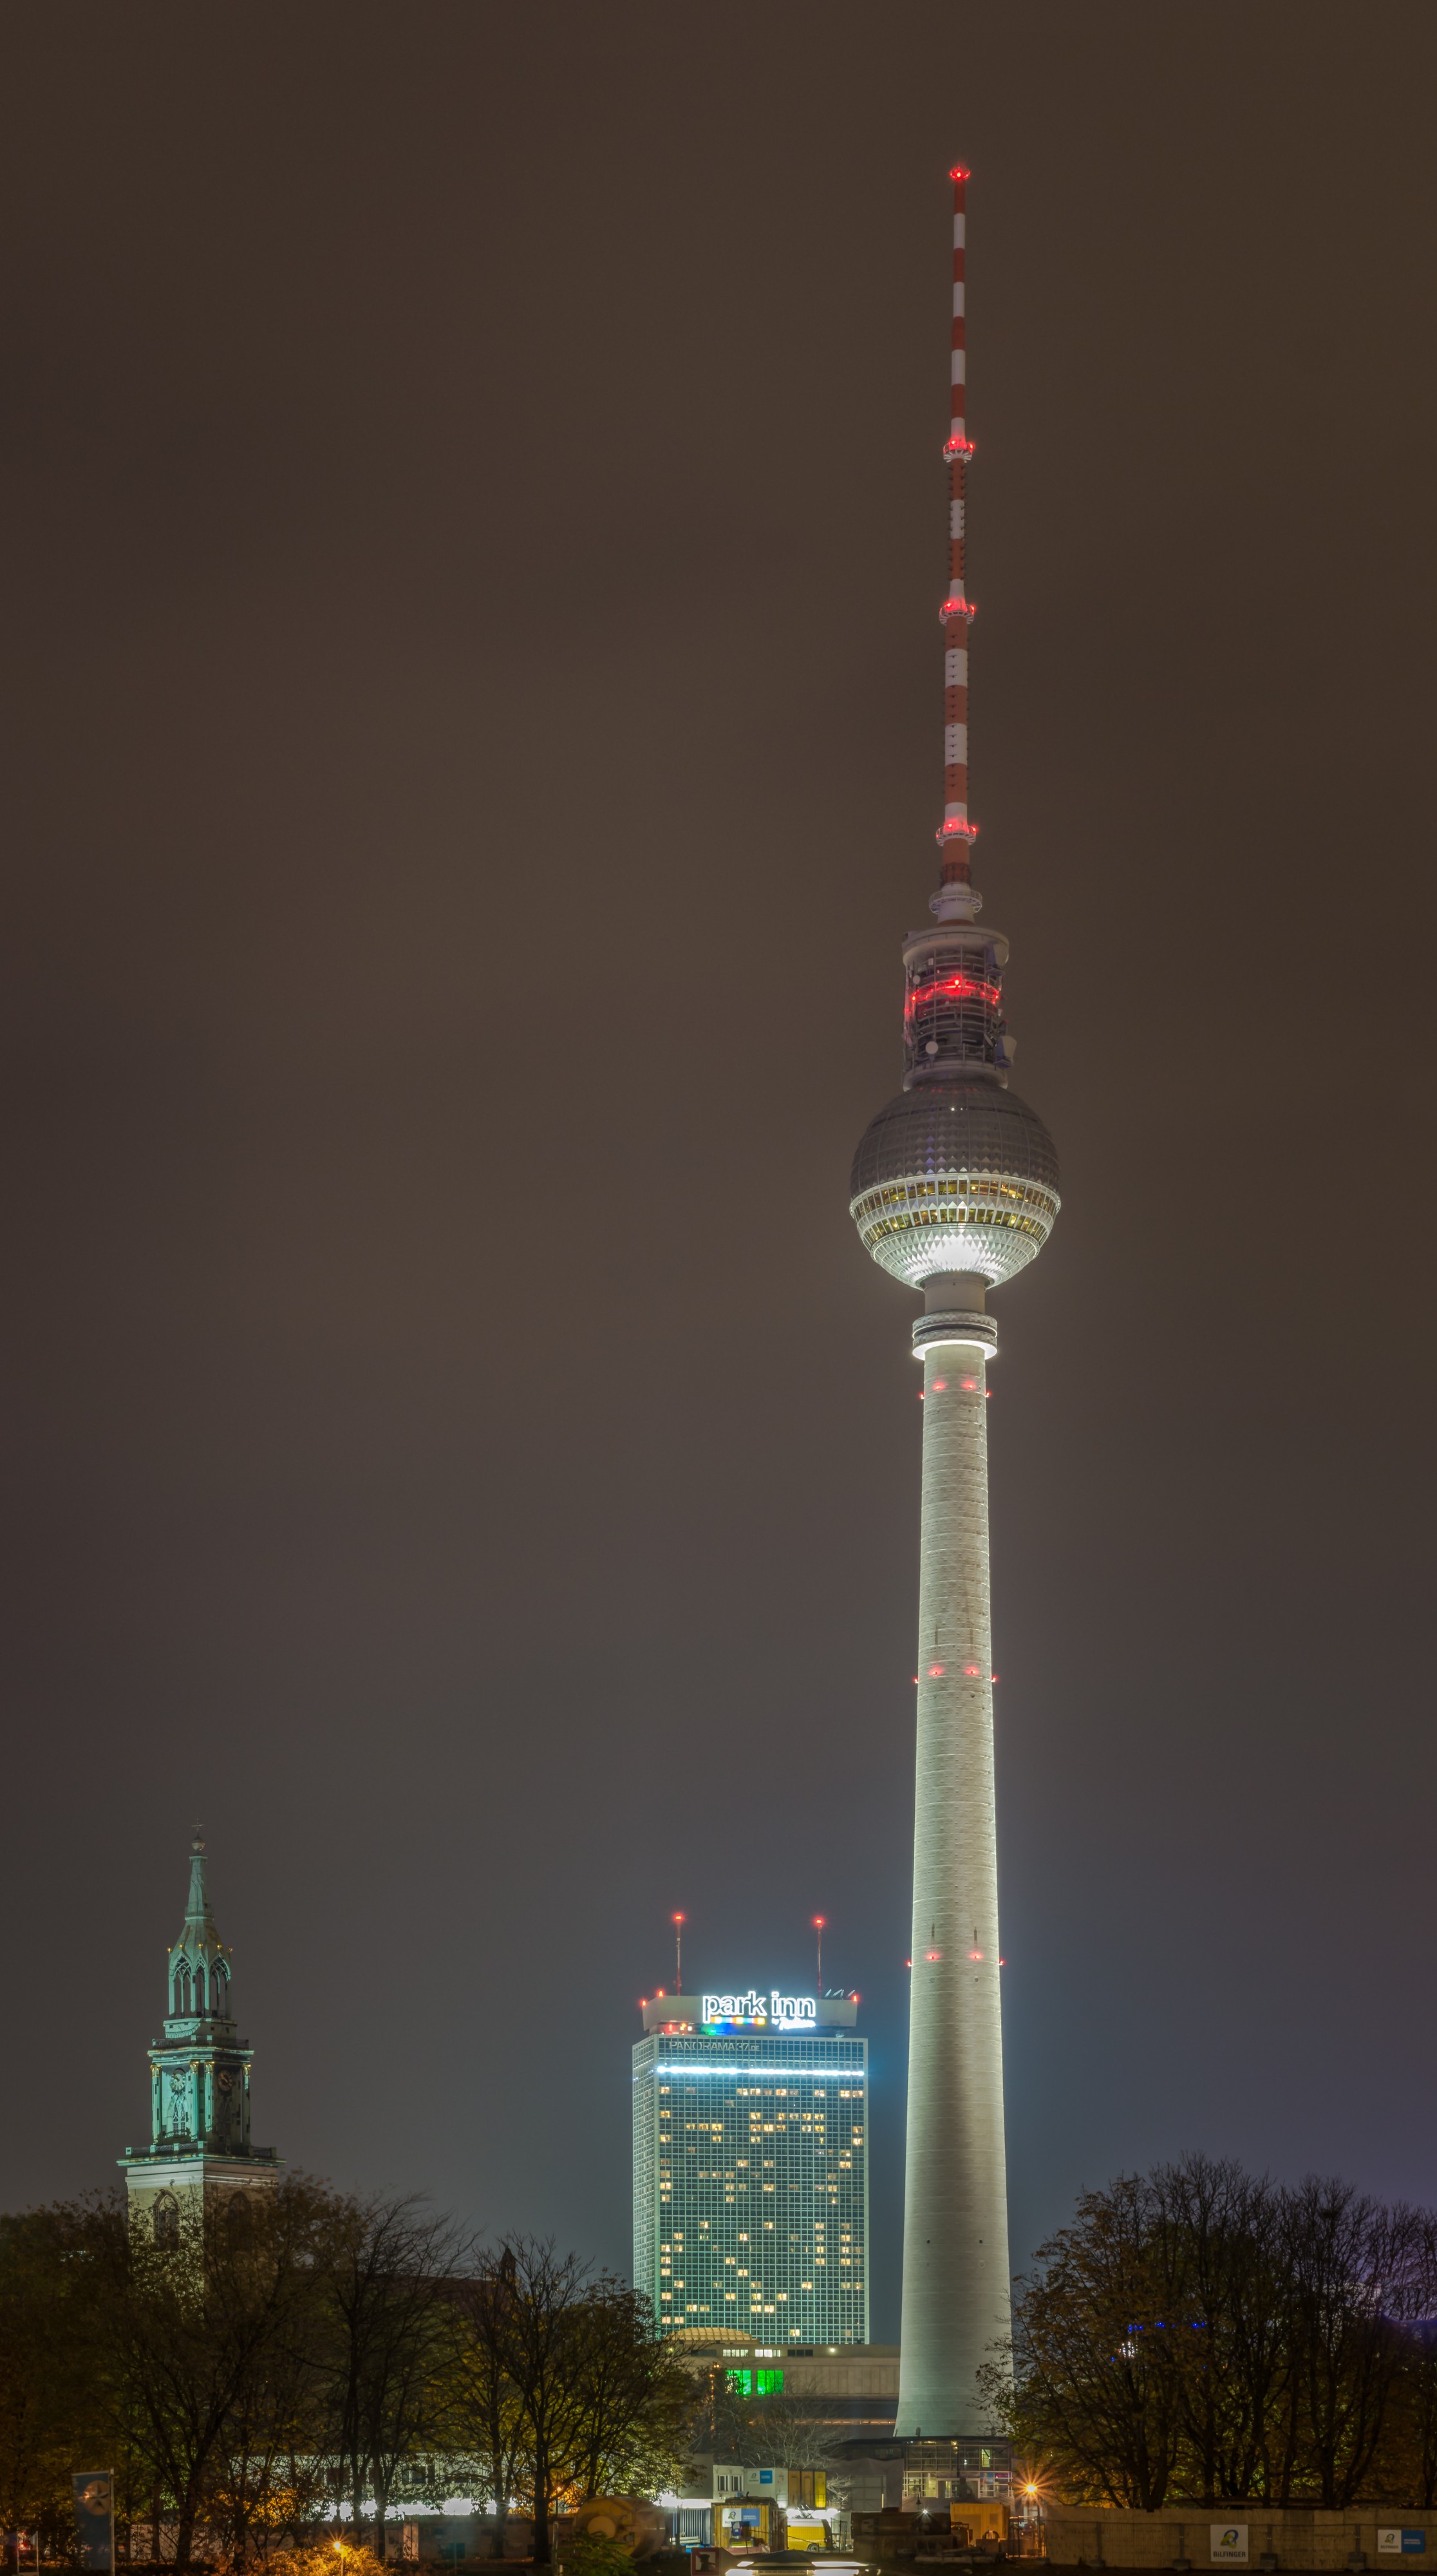 Fernsehturm Berlin at night (MK)